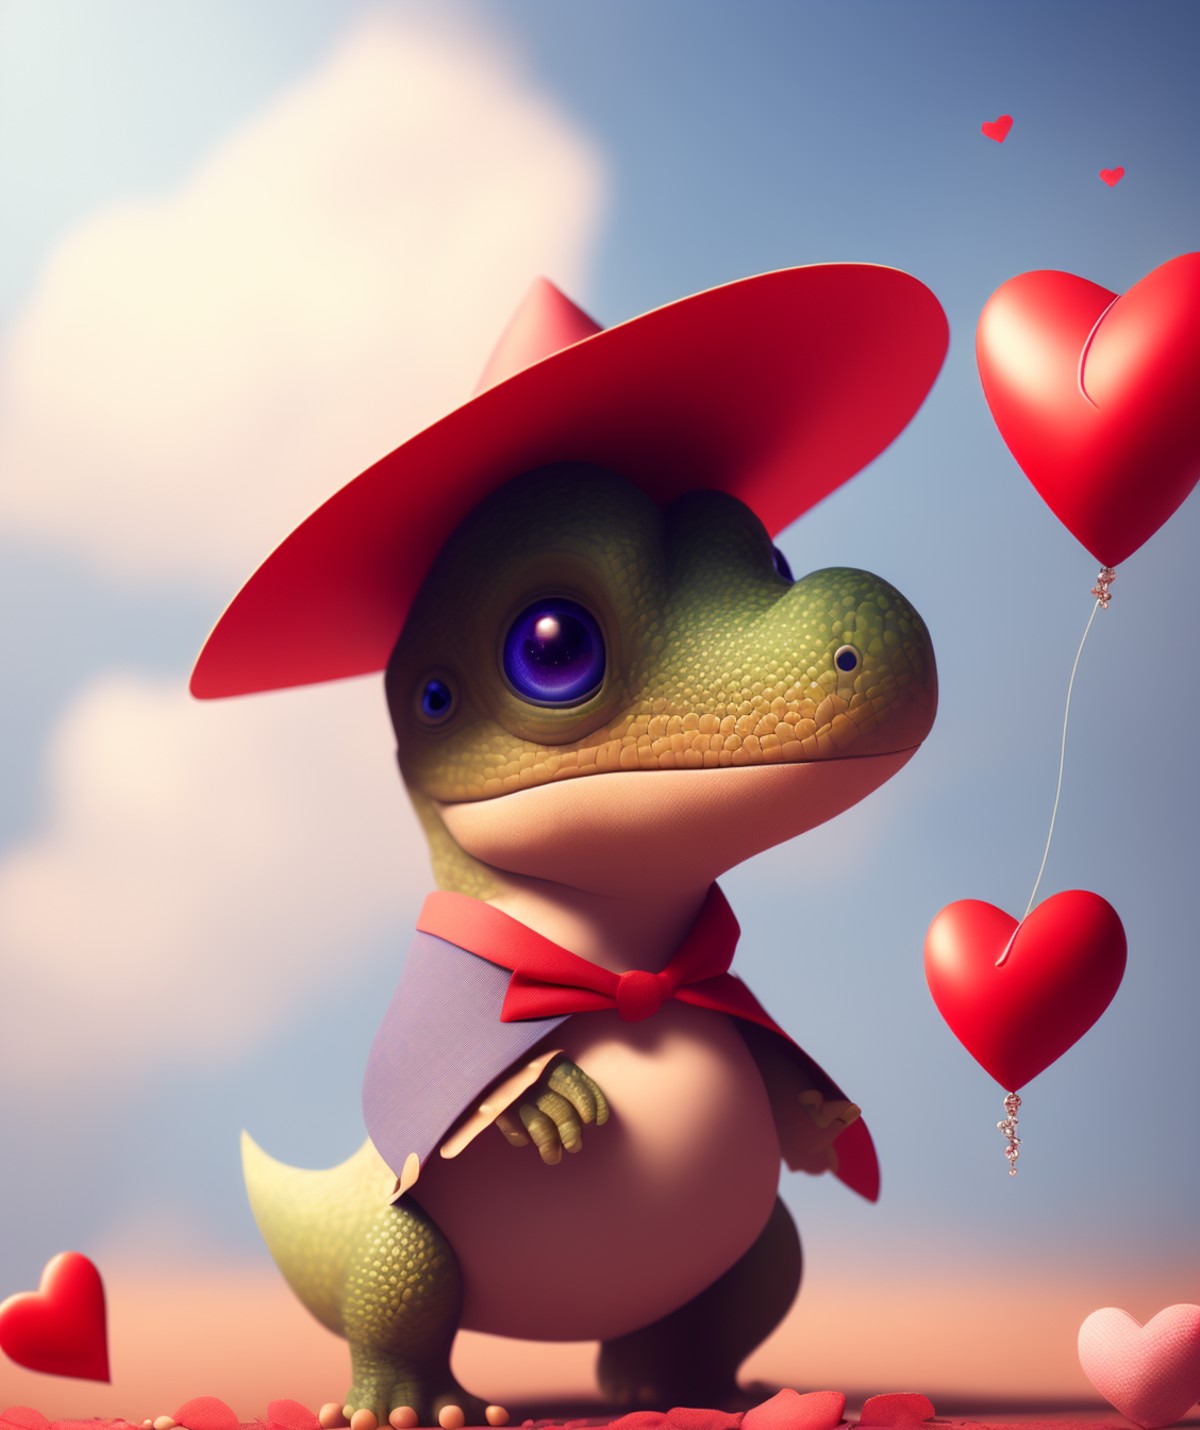 super cute dicuki with a big hat, in valentine's day, heart, clouds  beautiful, cute , 4k, detailed , digital art, trendin...